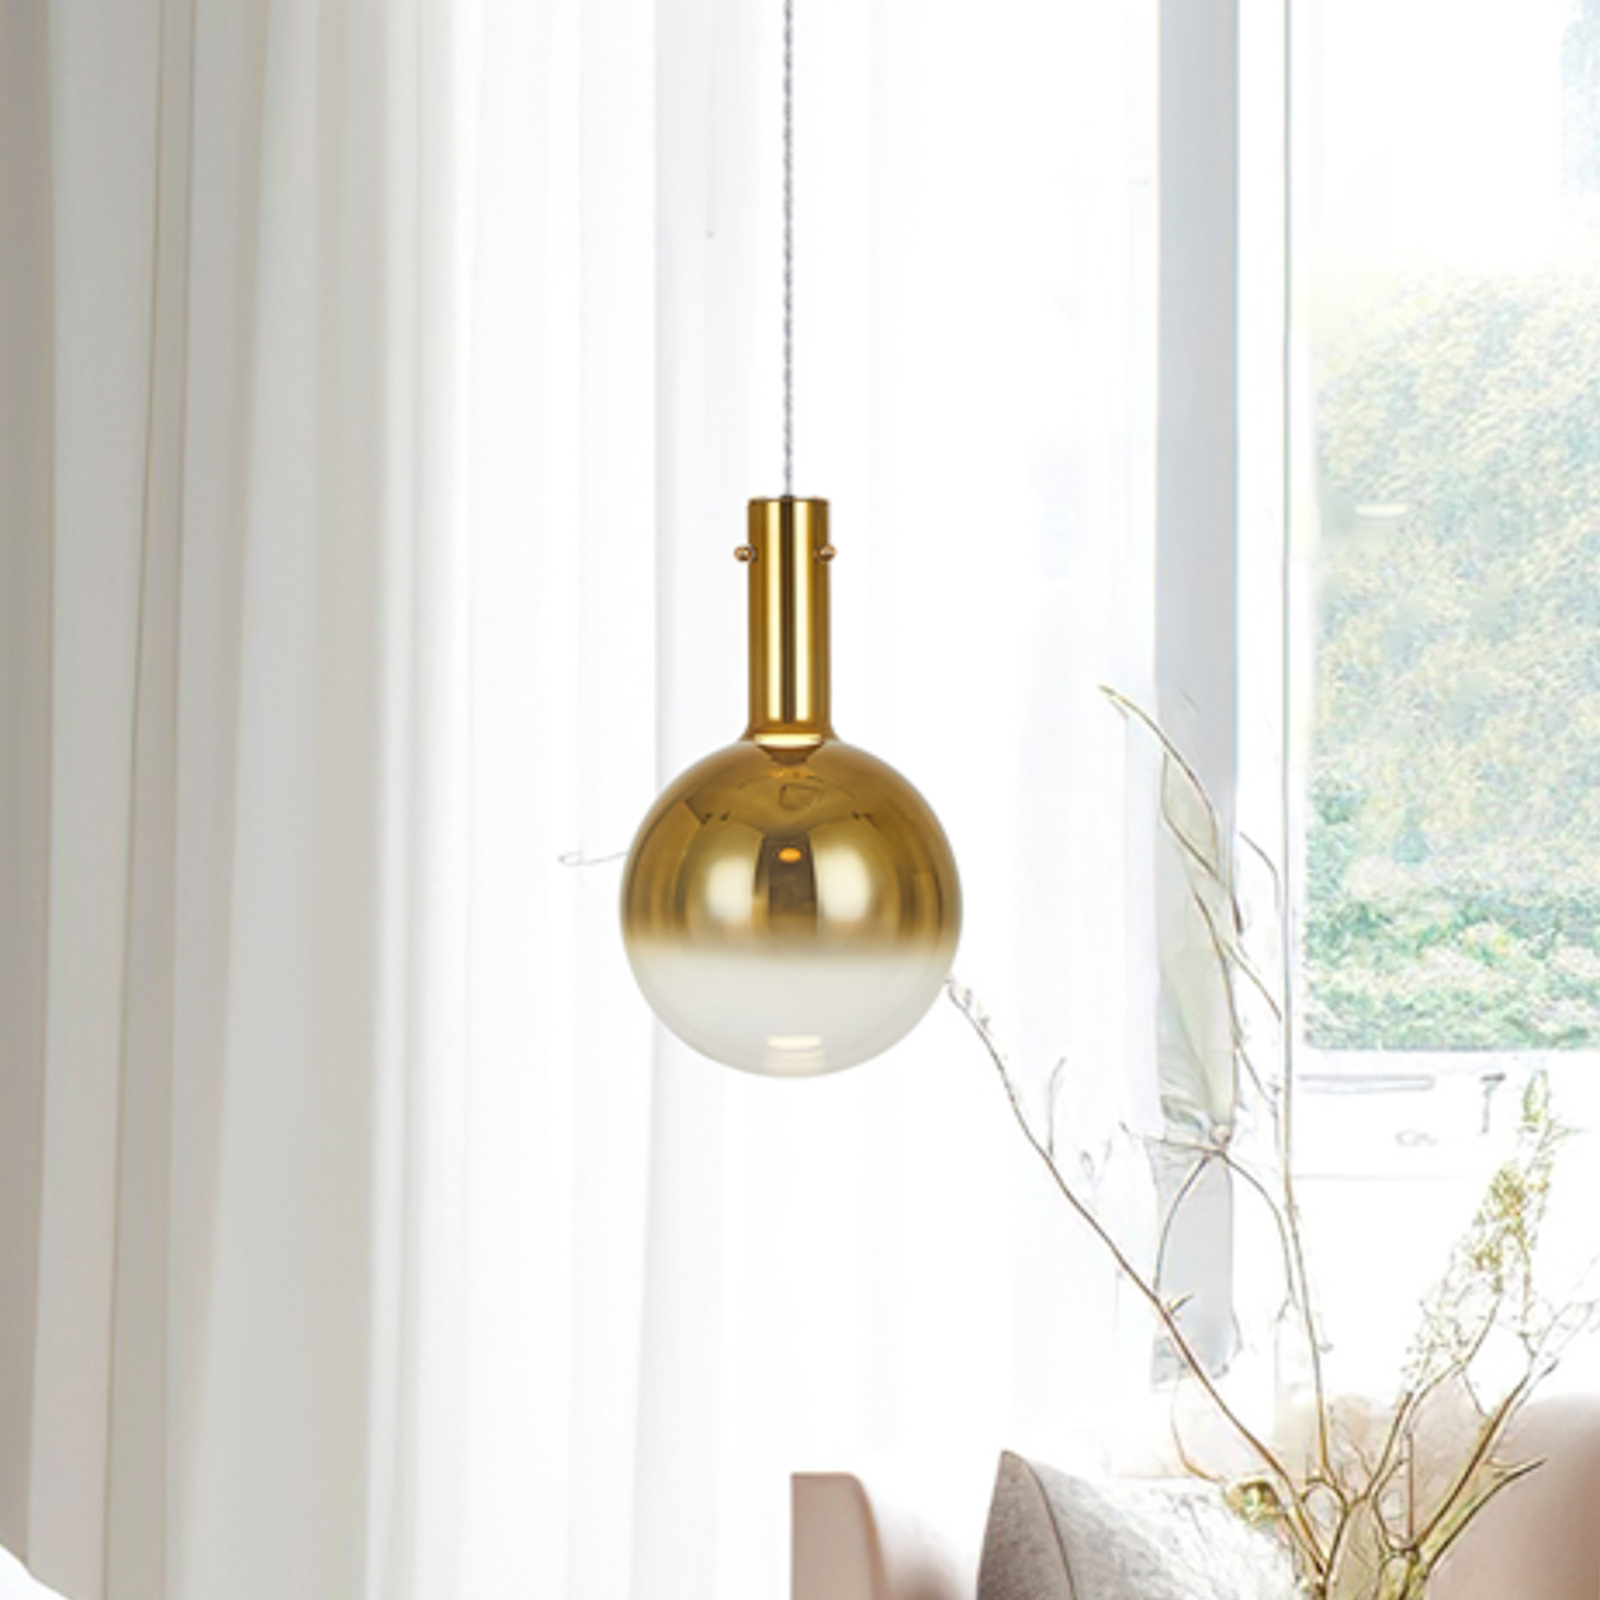 Lampa wisząca Toronto, kula z przezroczystego szkła w kolorze złotym, Ø 25